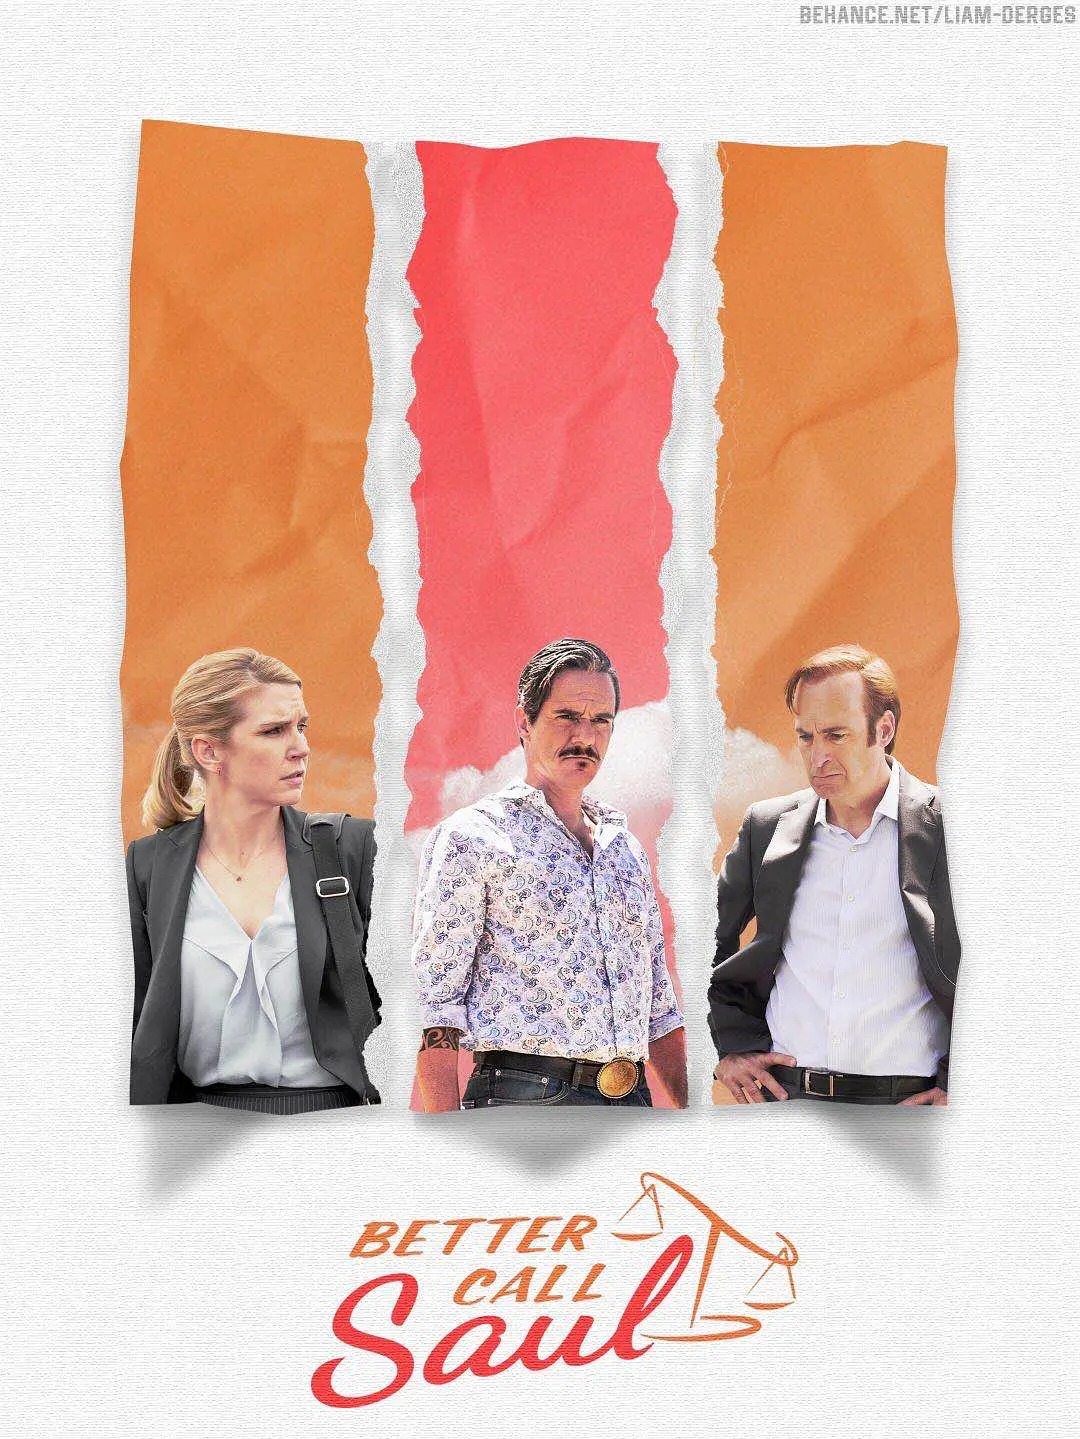 风骚律师 第六季 Better Call Saul Season 6 (2022) .jpeg